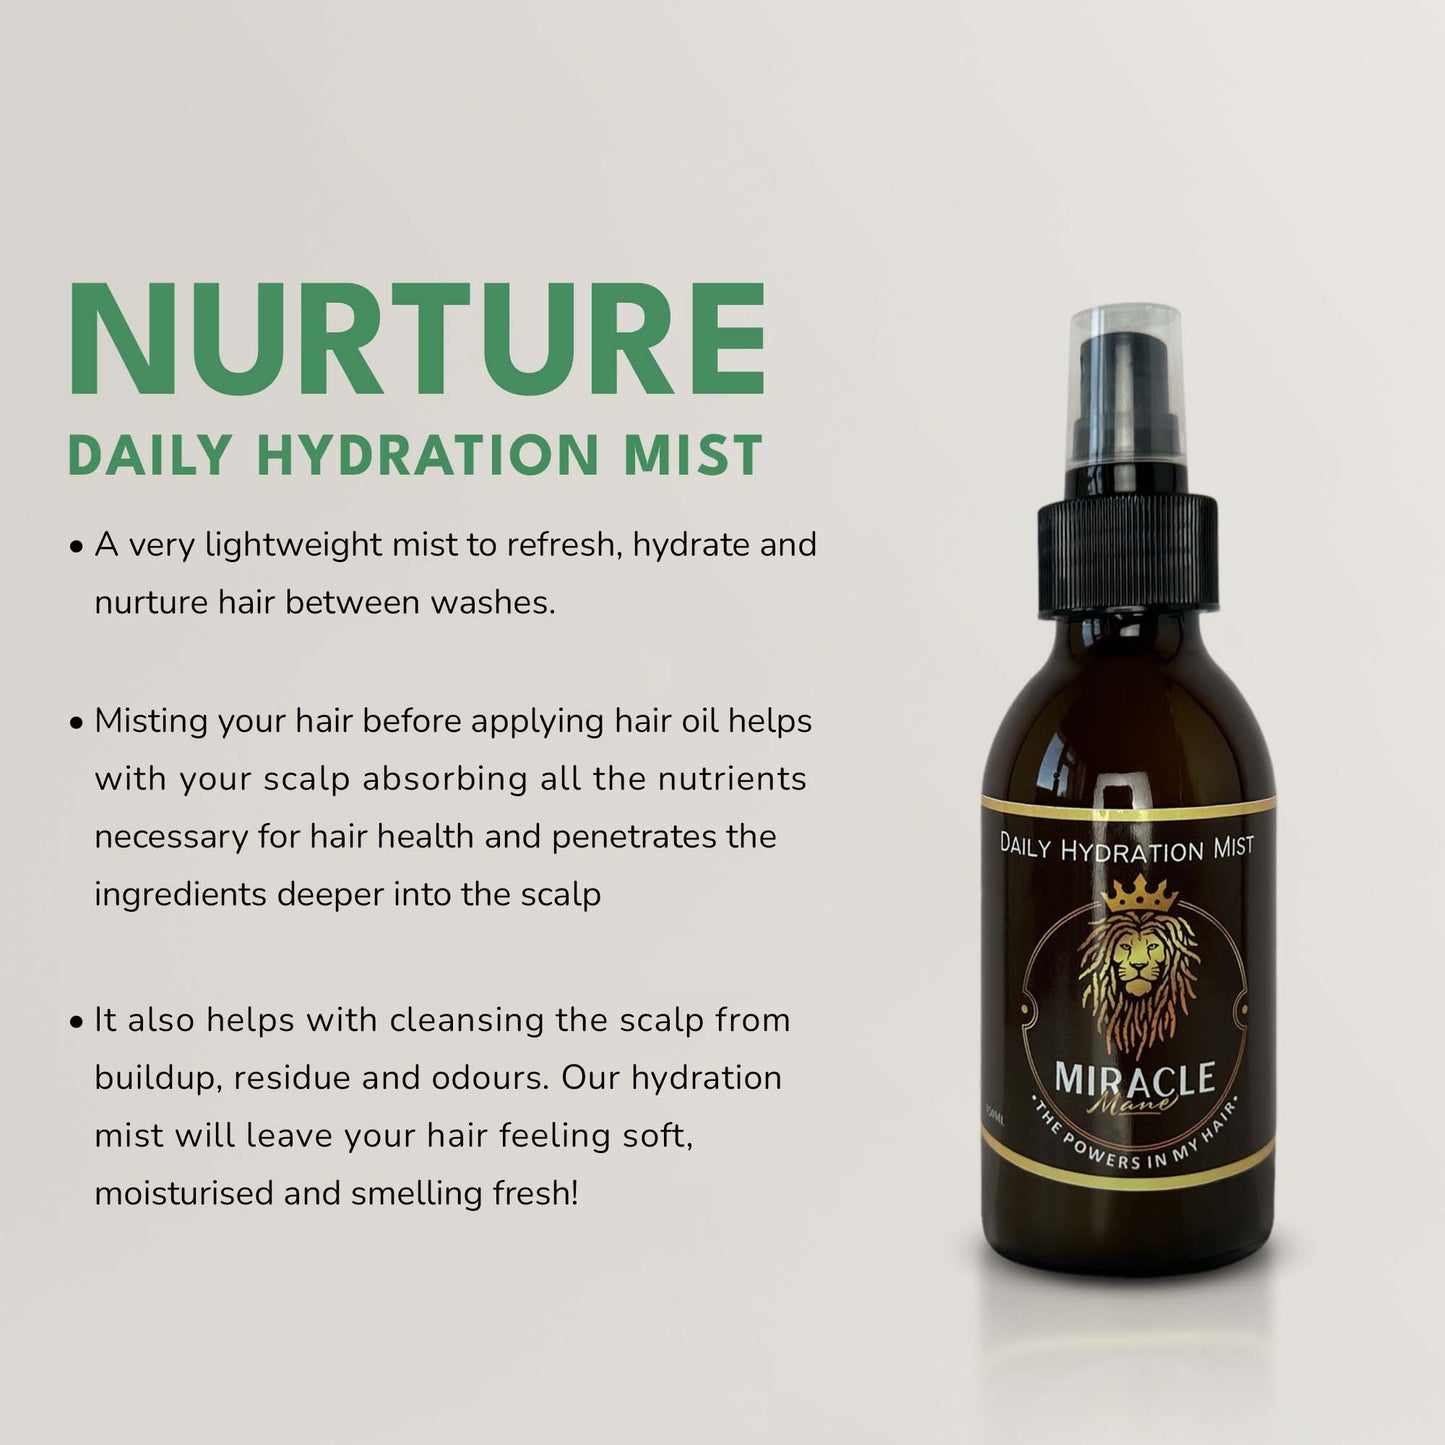 Nurture - Daily Hydration Mist